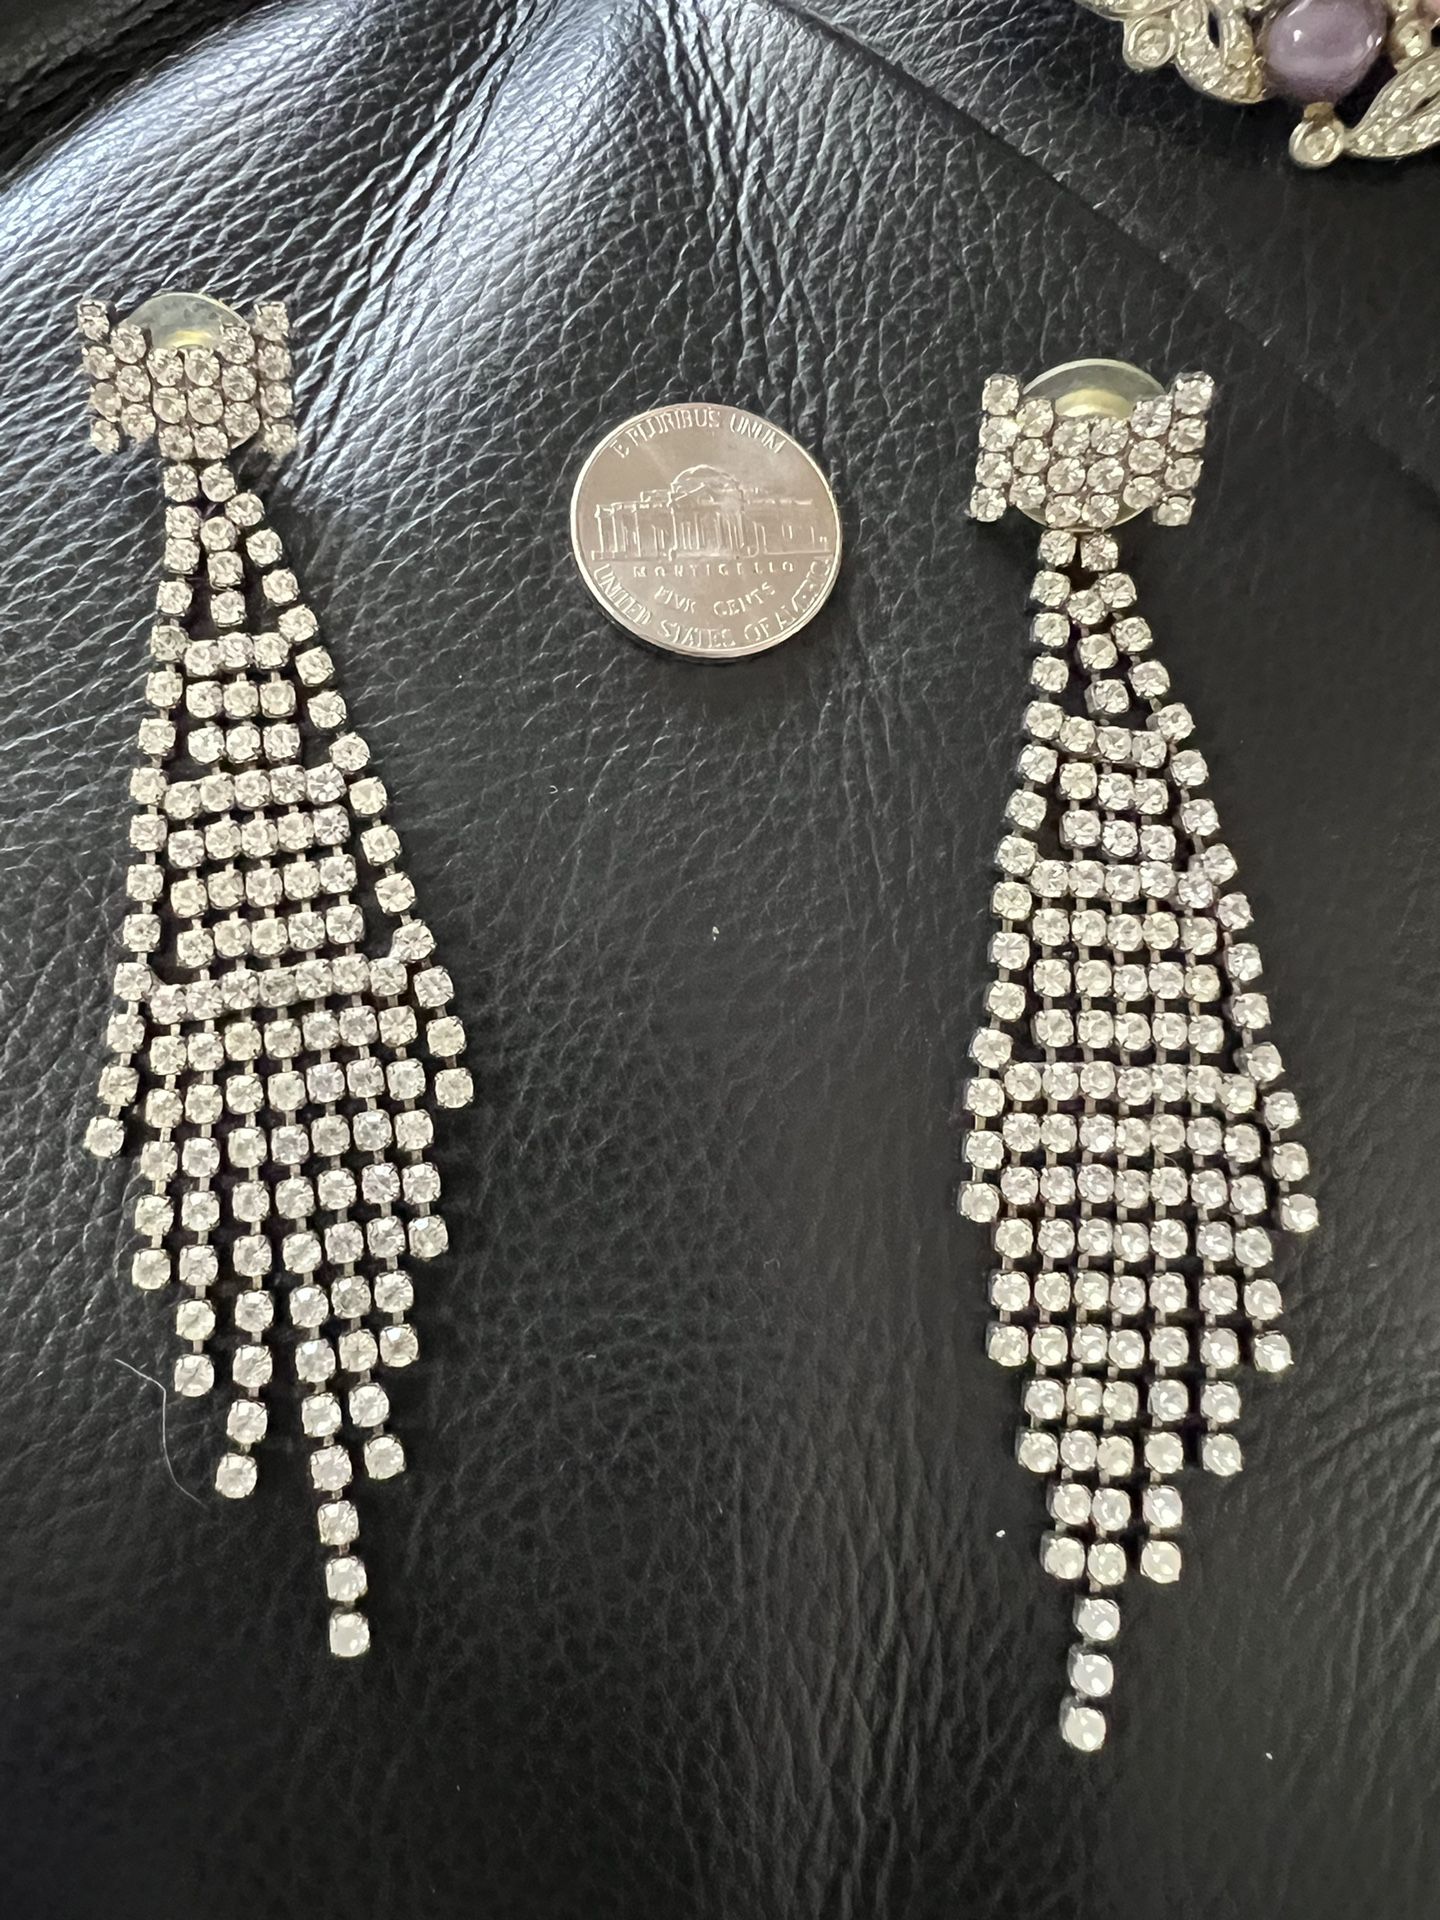 80’s & 90’s Jewelry